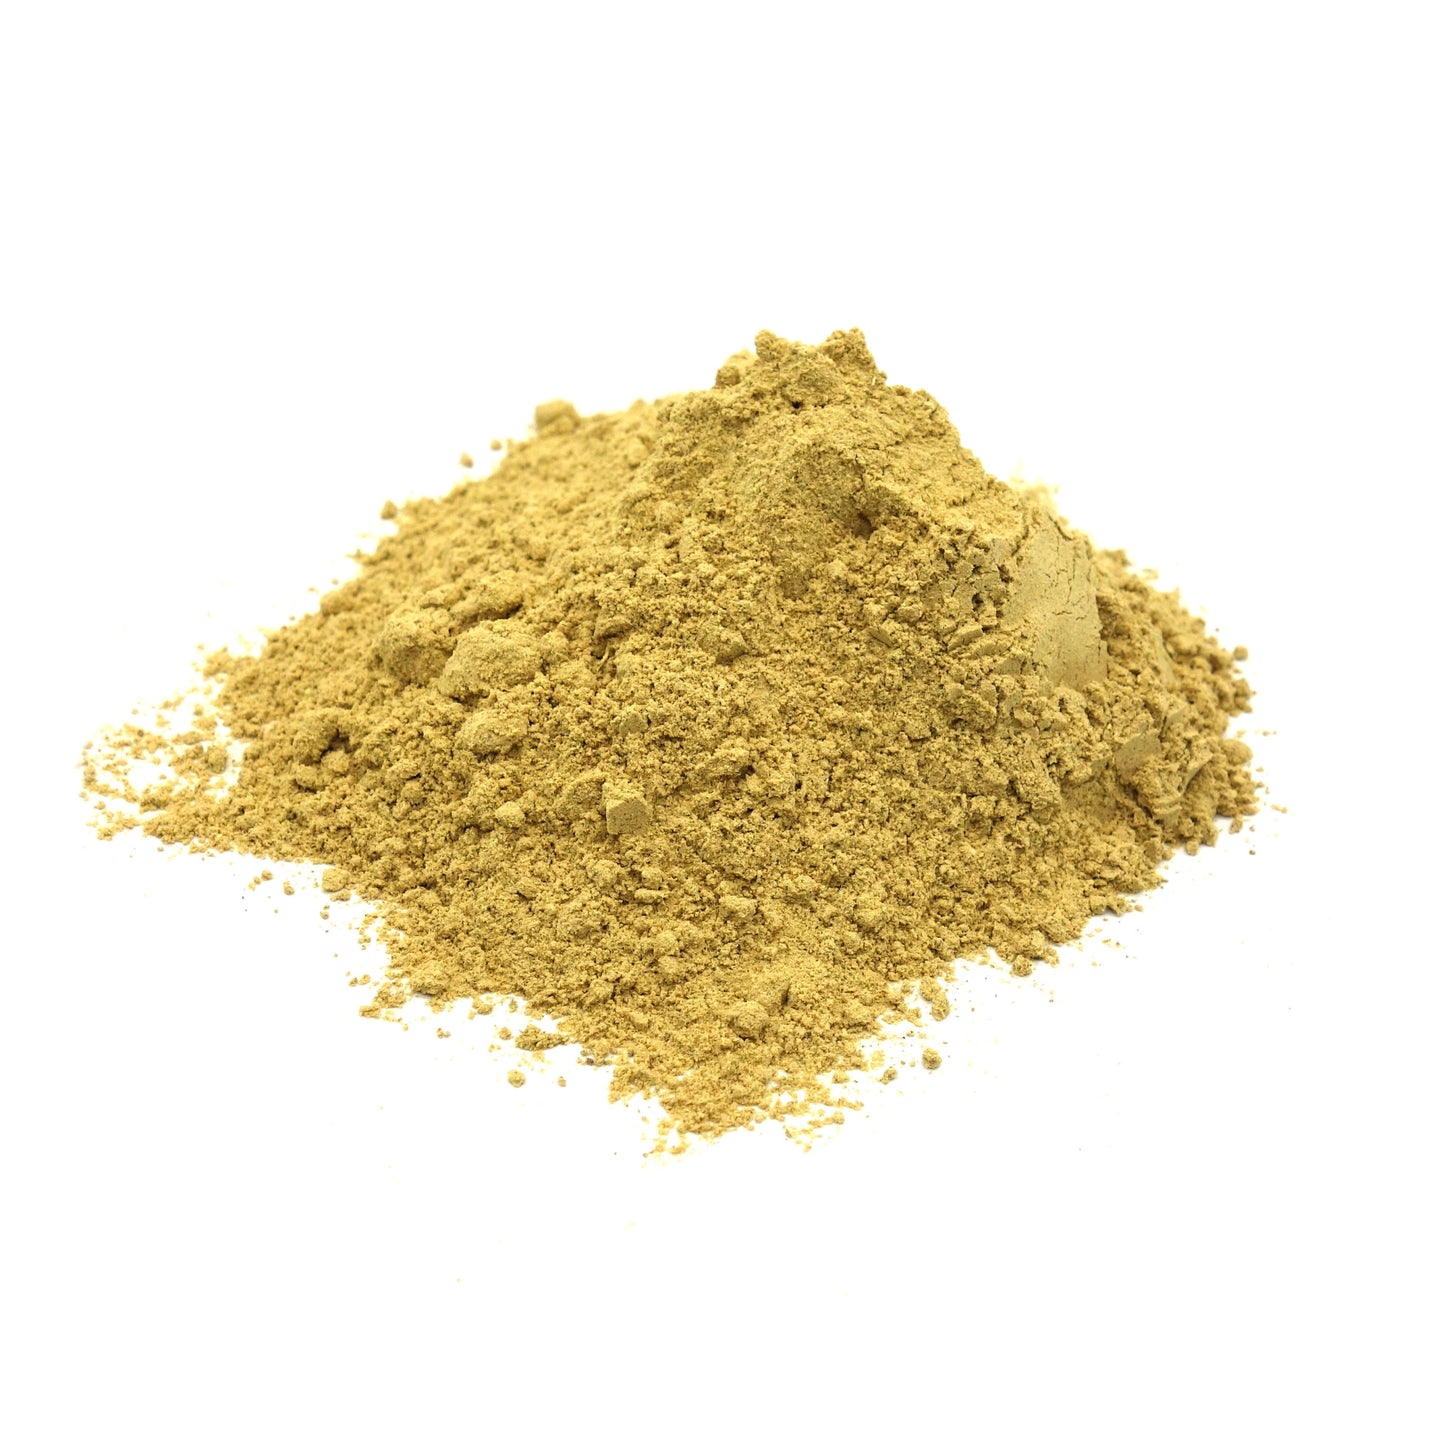 Triphala powder